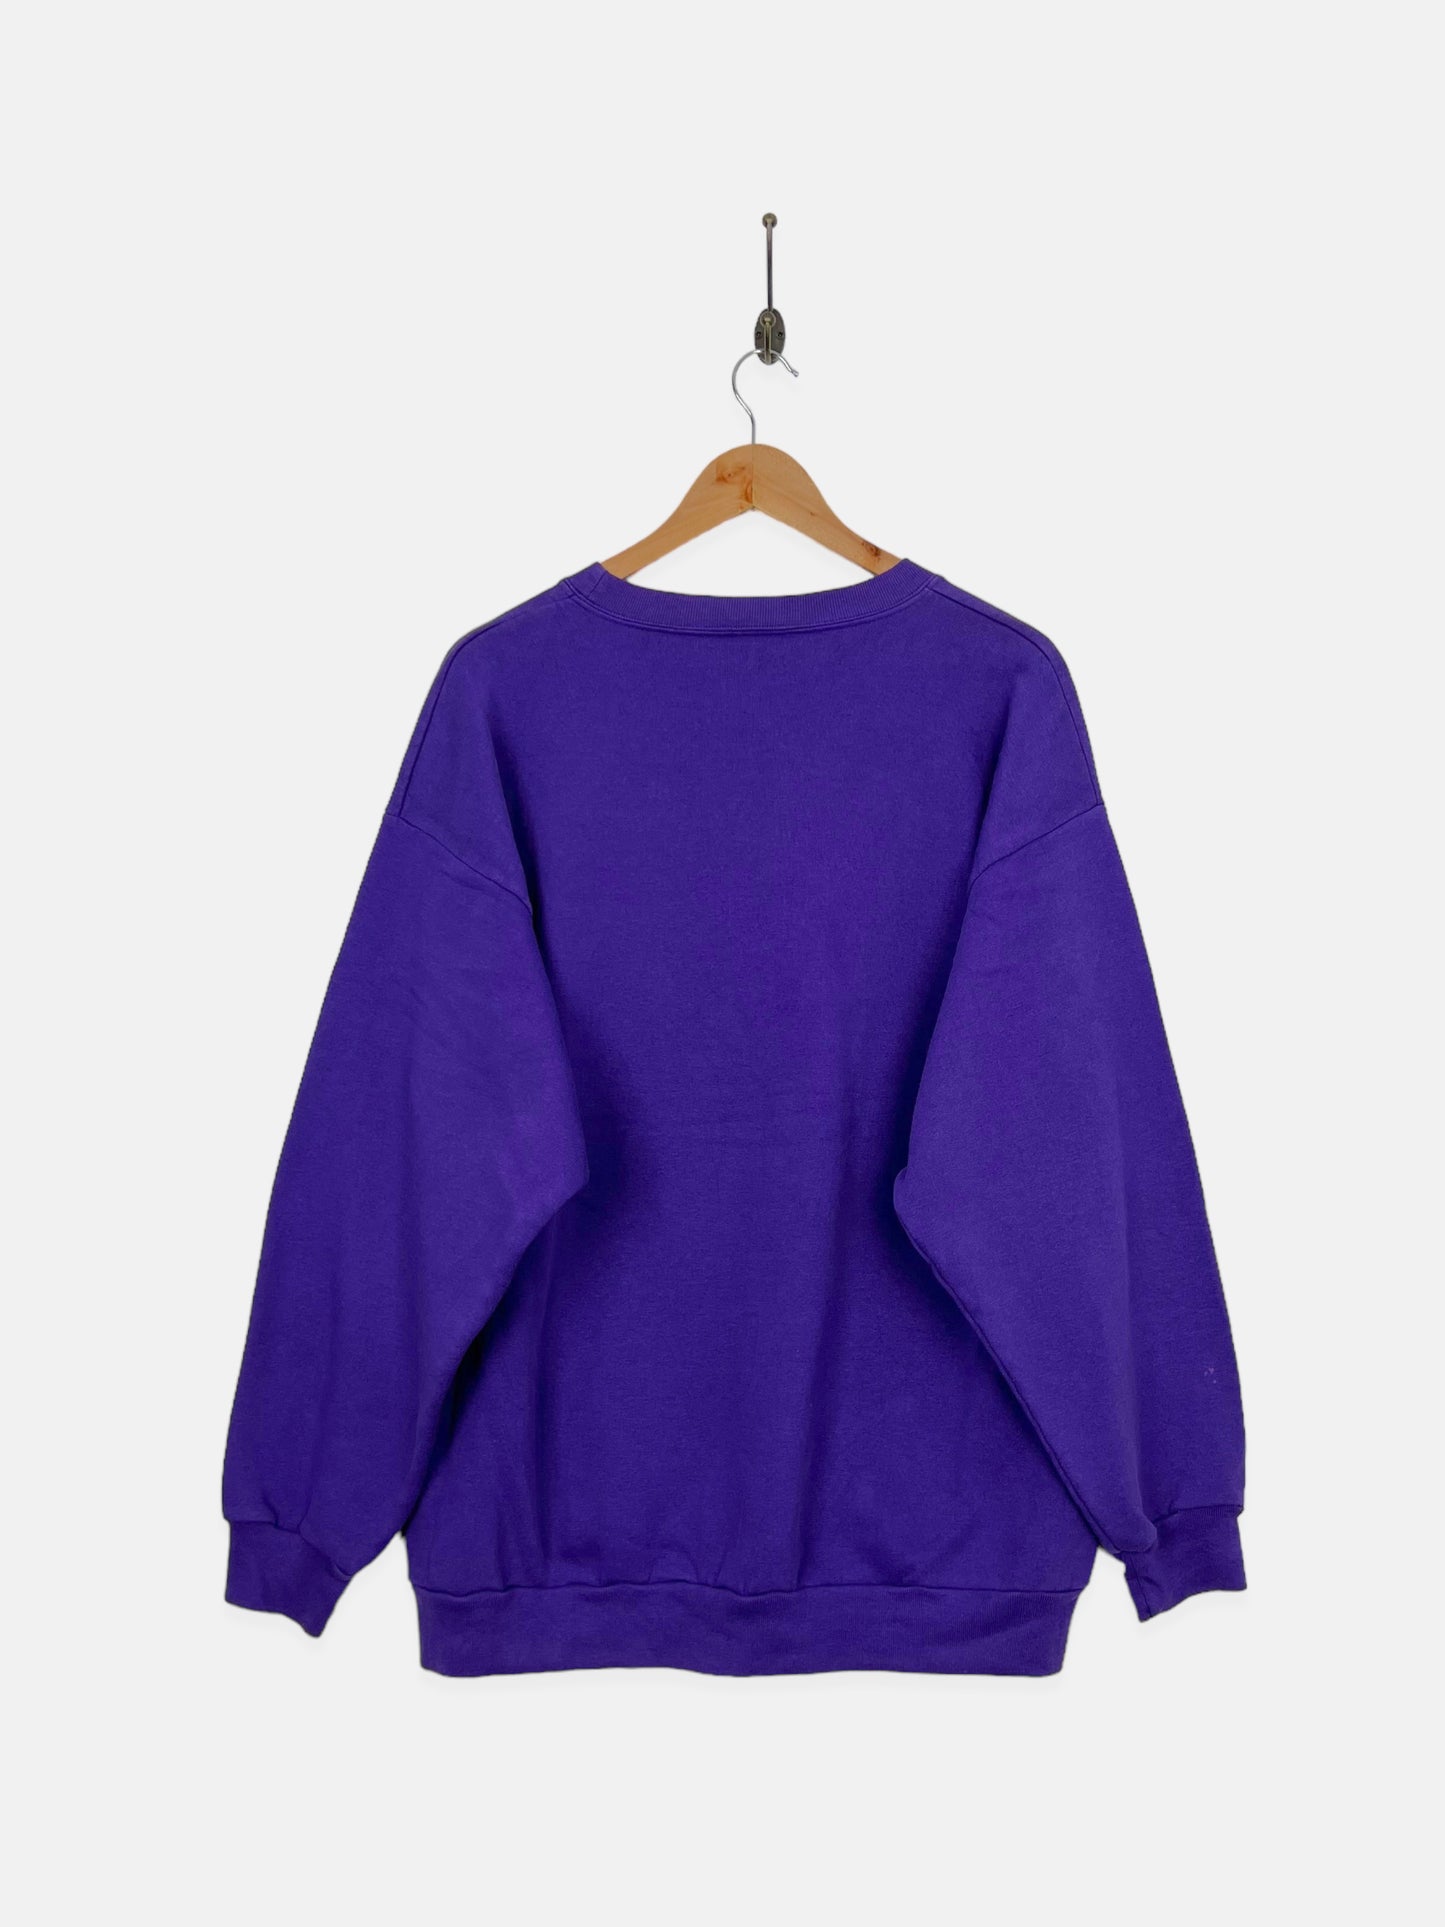 90's Minnesota Vikings NFL Embroidered Vintage Sweatshirt Size L